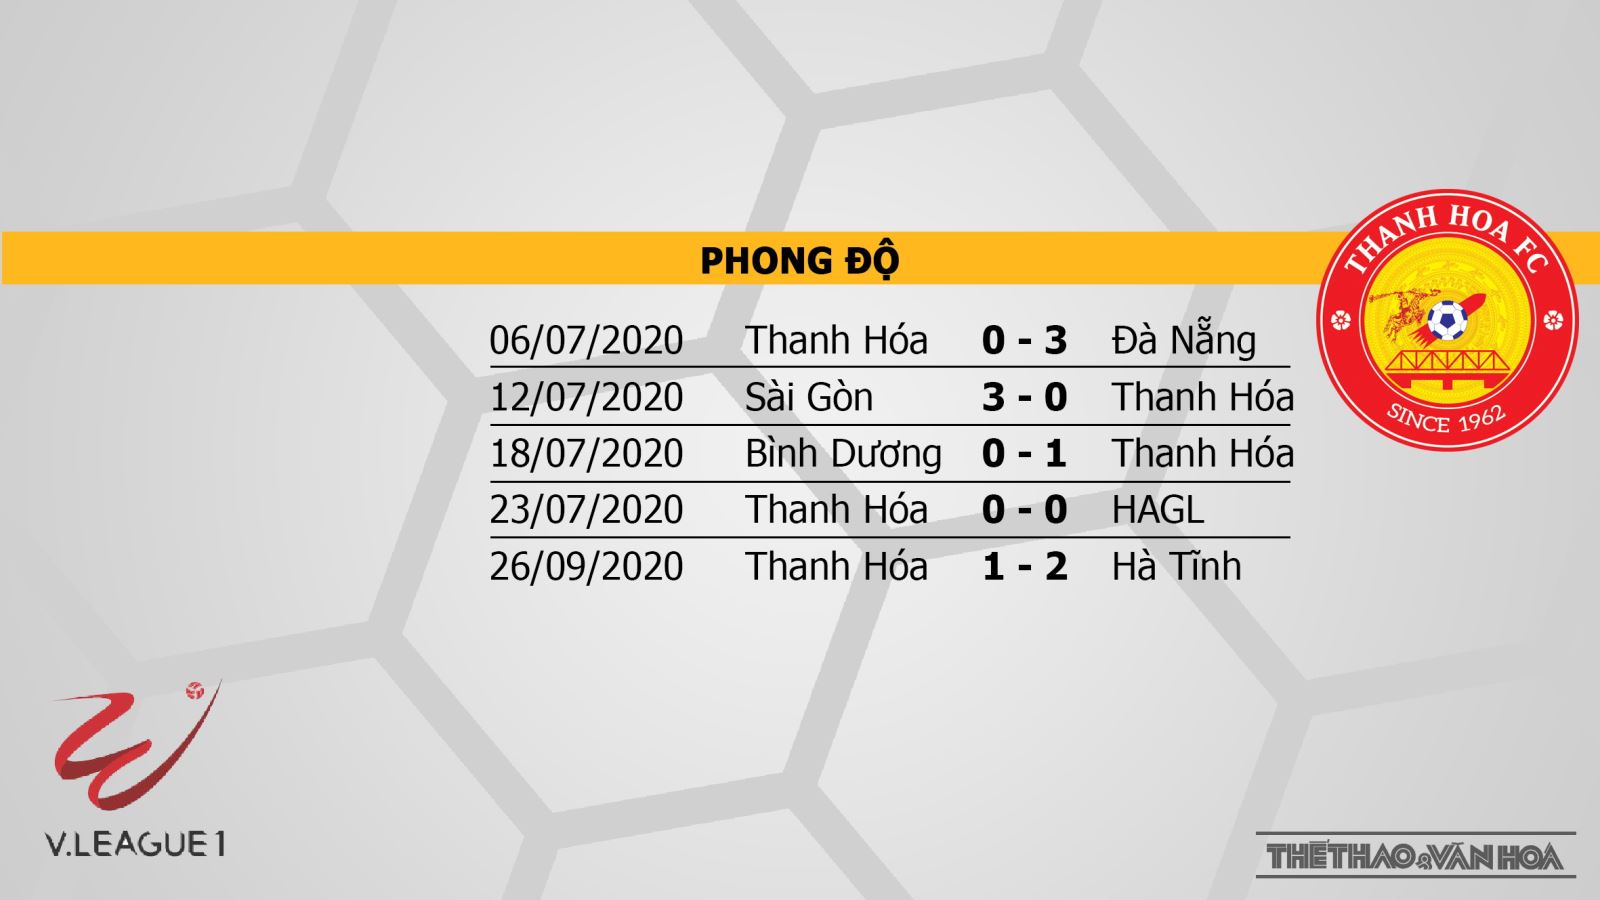 Hà Nội vs Thanh Hóa, Hà Nội, Thanh Hoá, nhận định bóng đá Hà Nội vs Thanh Hóa, kèo bóng đá, kèo thơm, nhận định Hà Nội vs Thanh Hóa